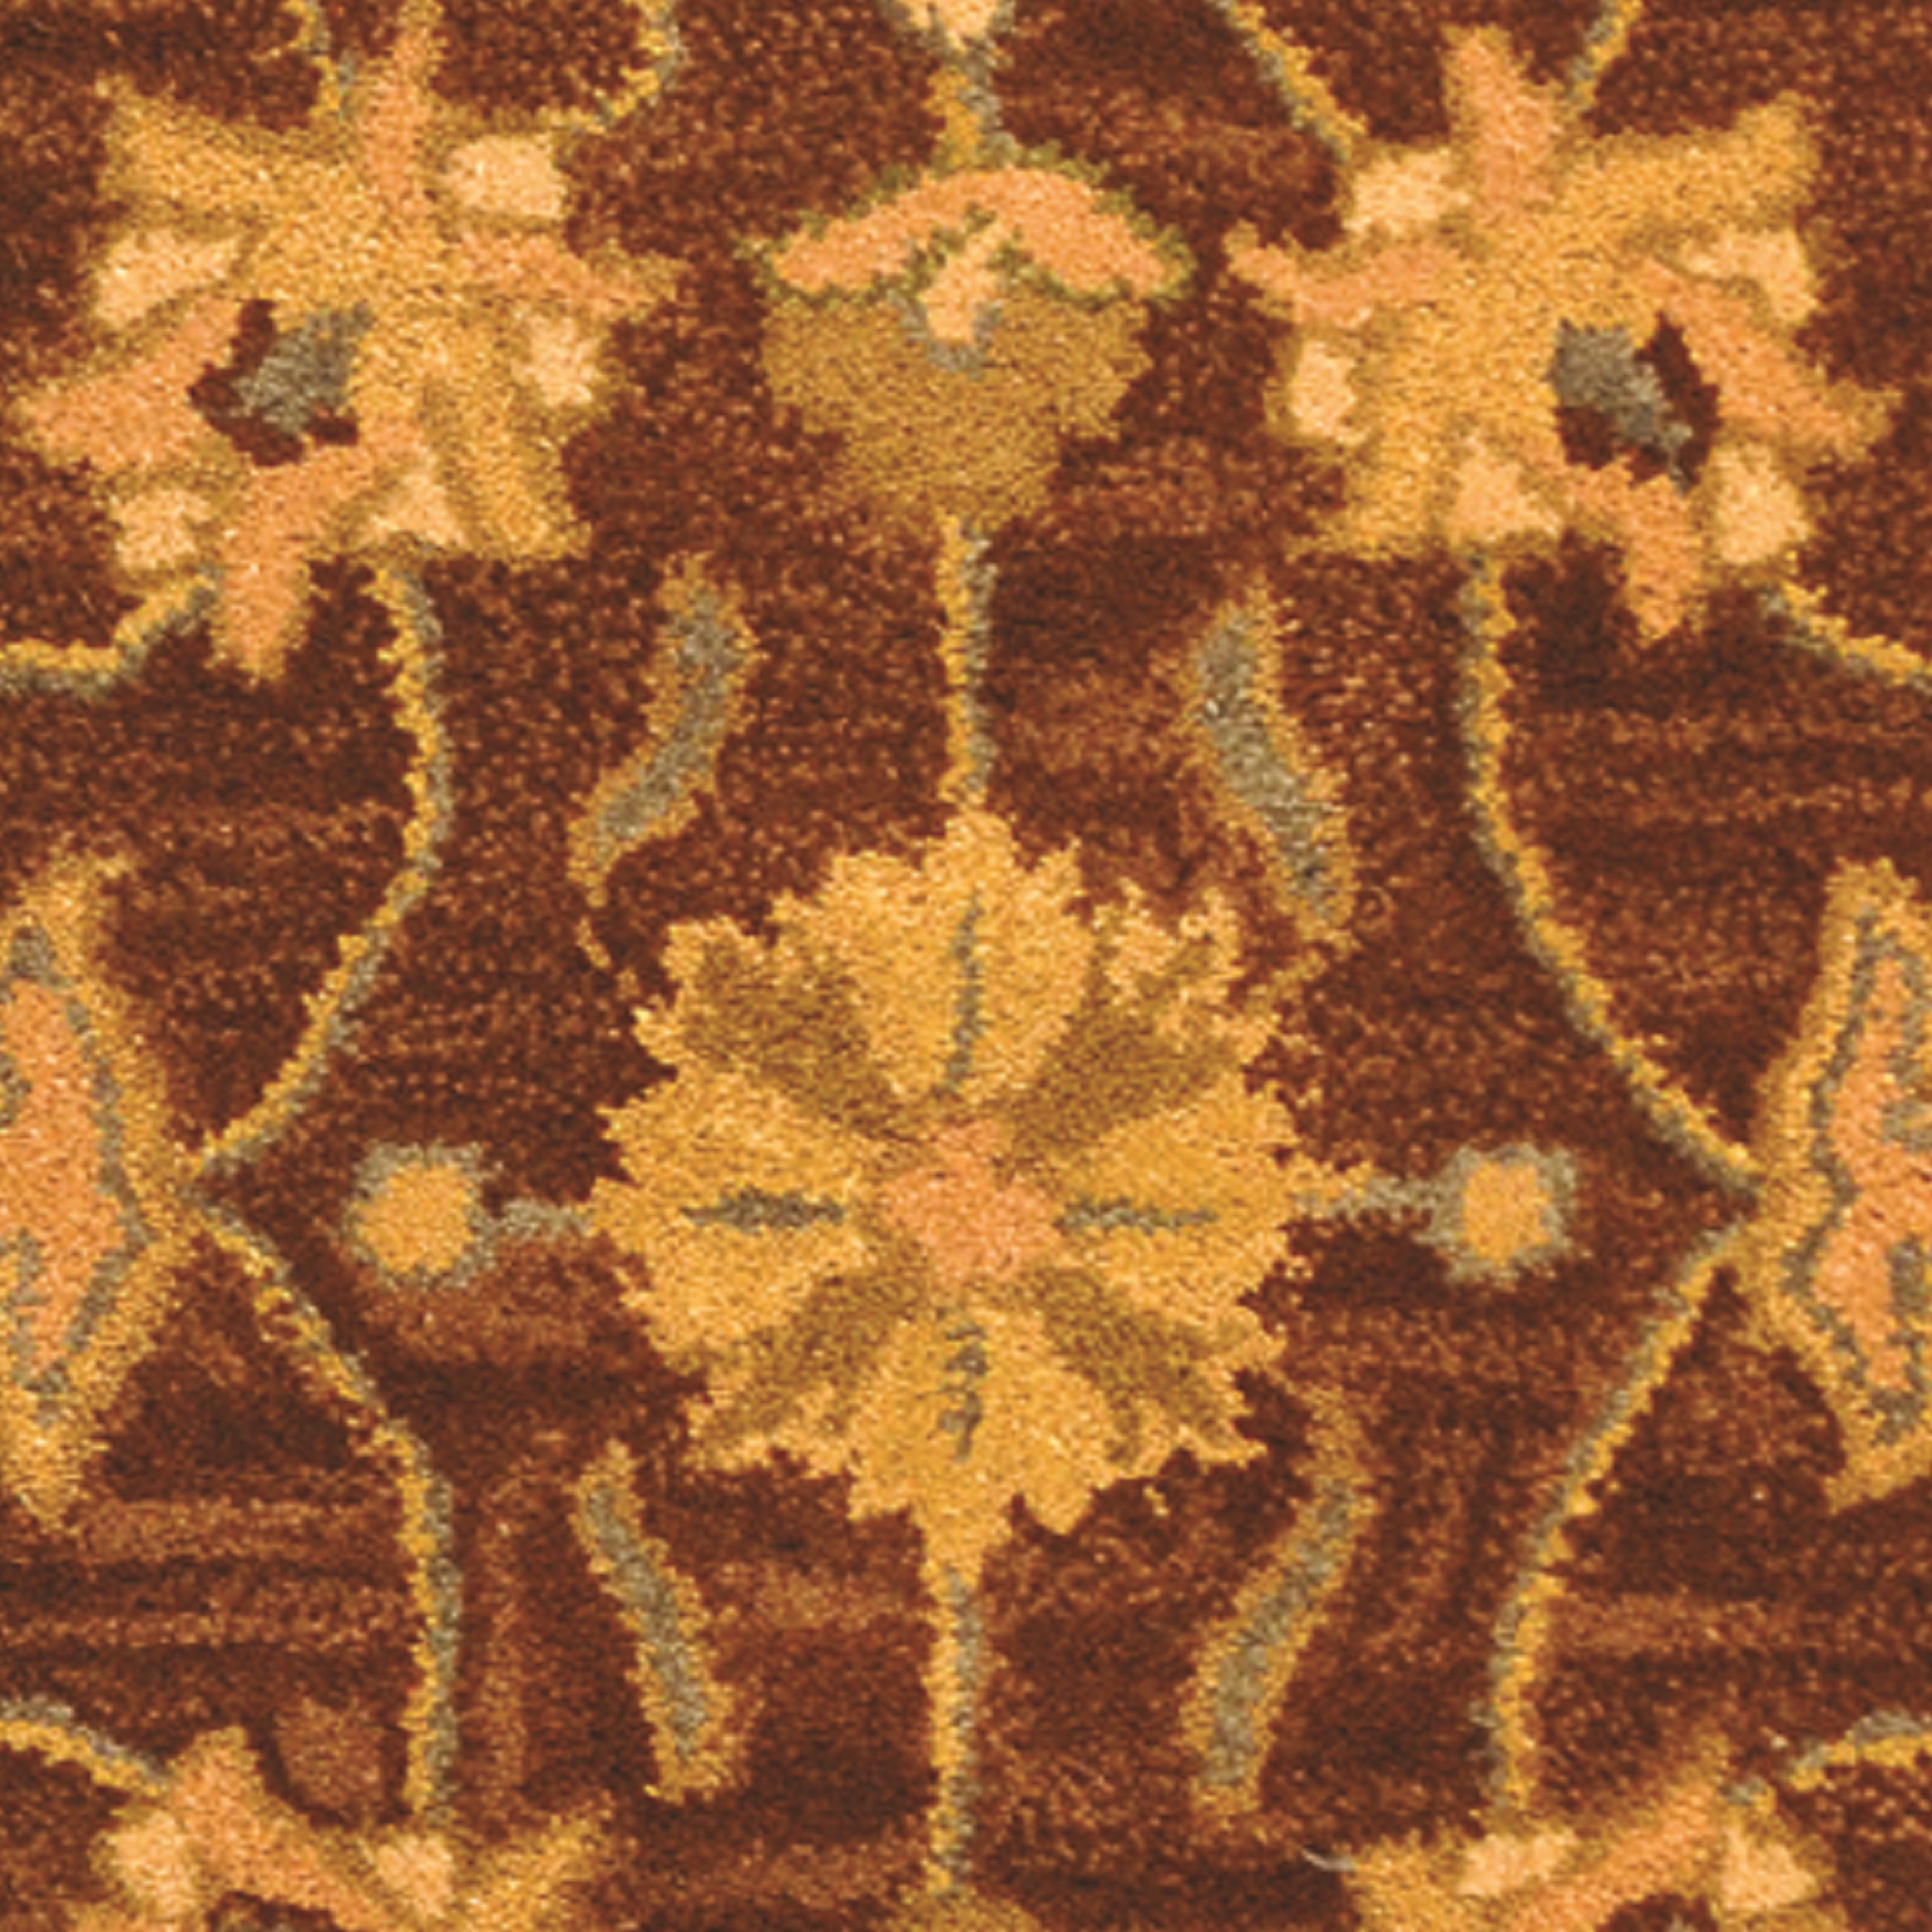 SAFAVIEH Heritage Regis Traditional Wool Area Rug, Brown/Blue, 5' x 8' - image 3 of 4